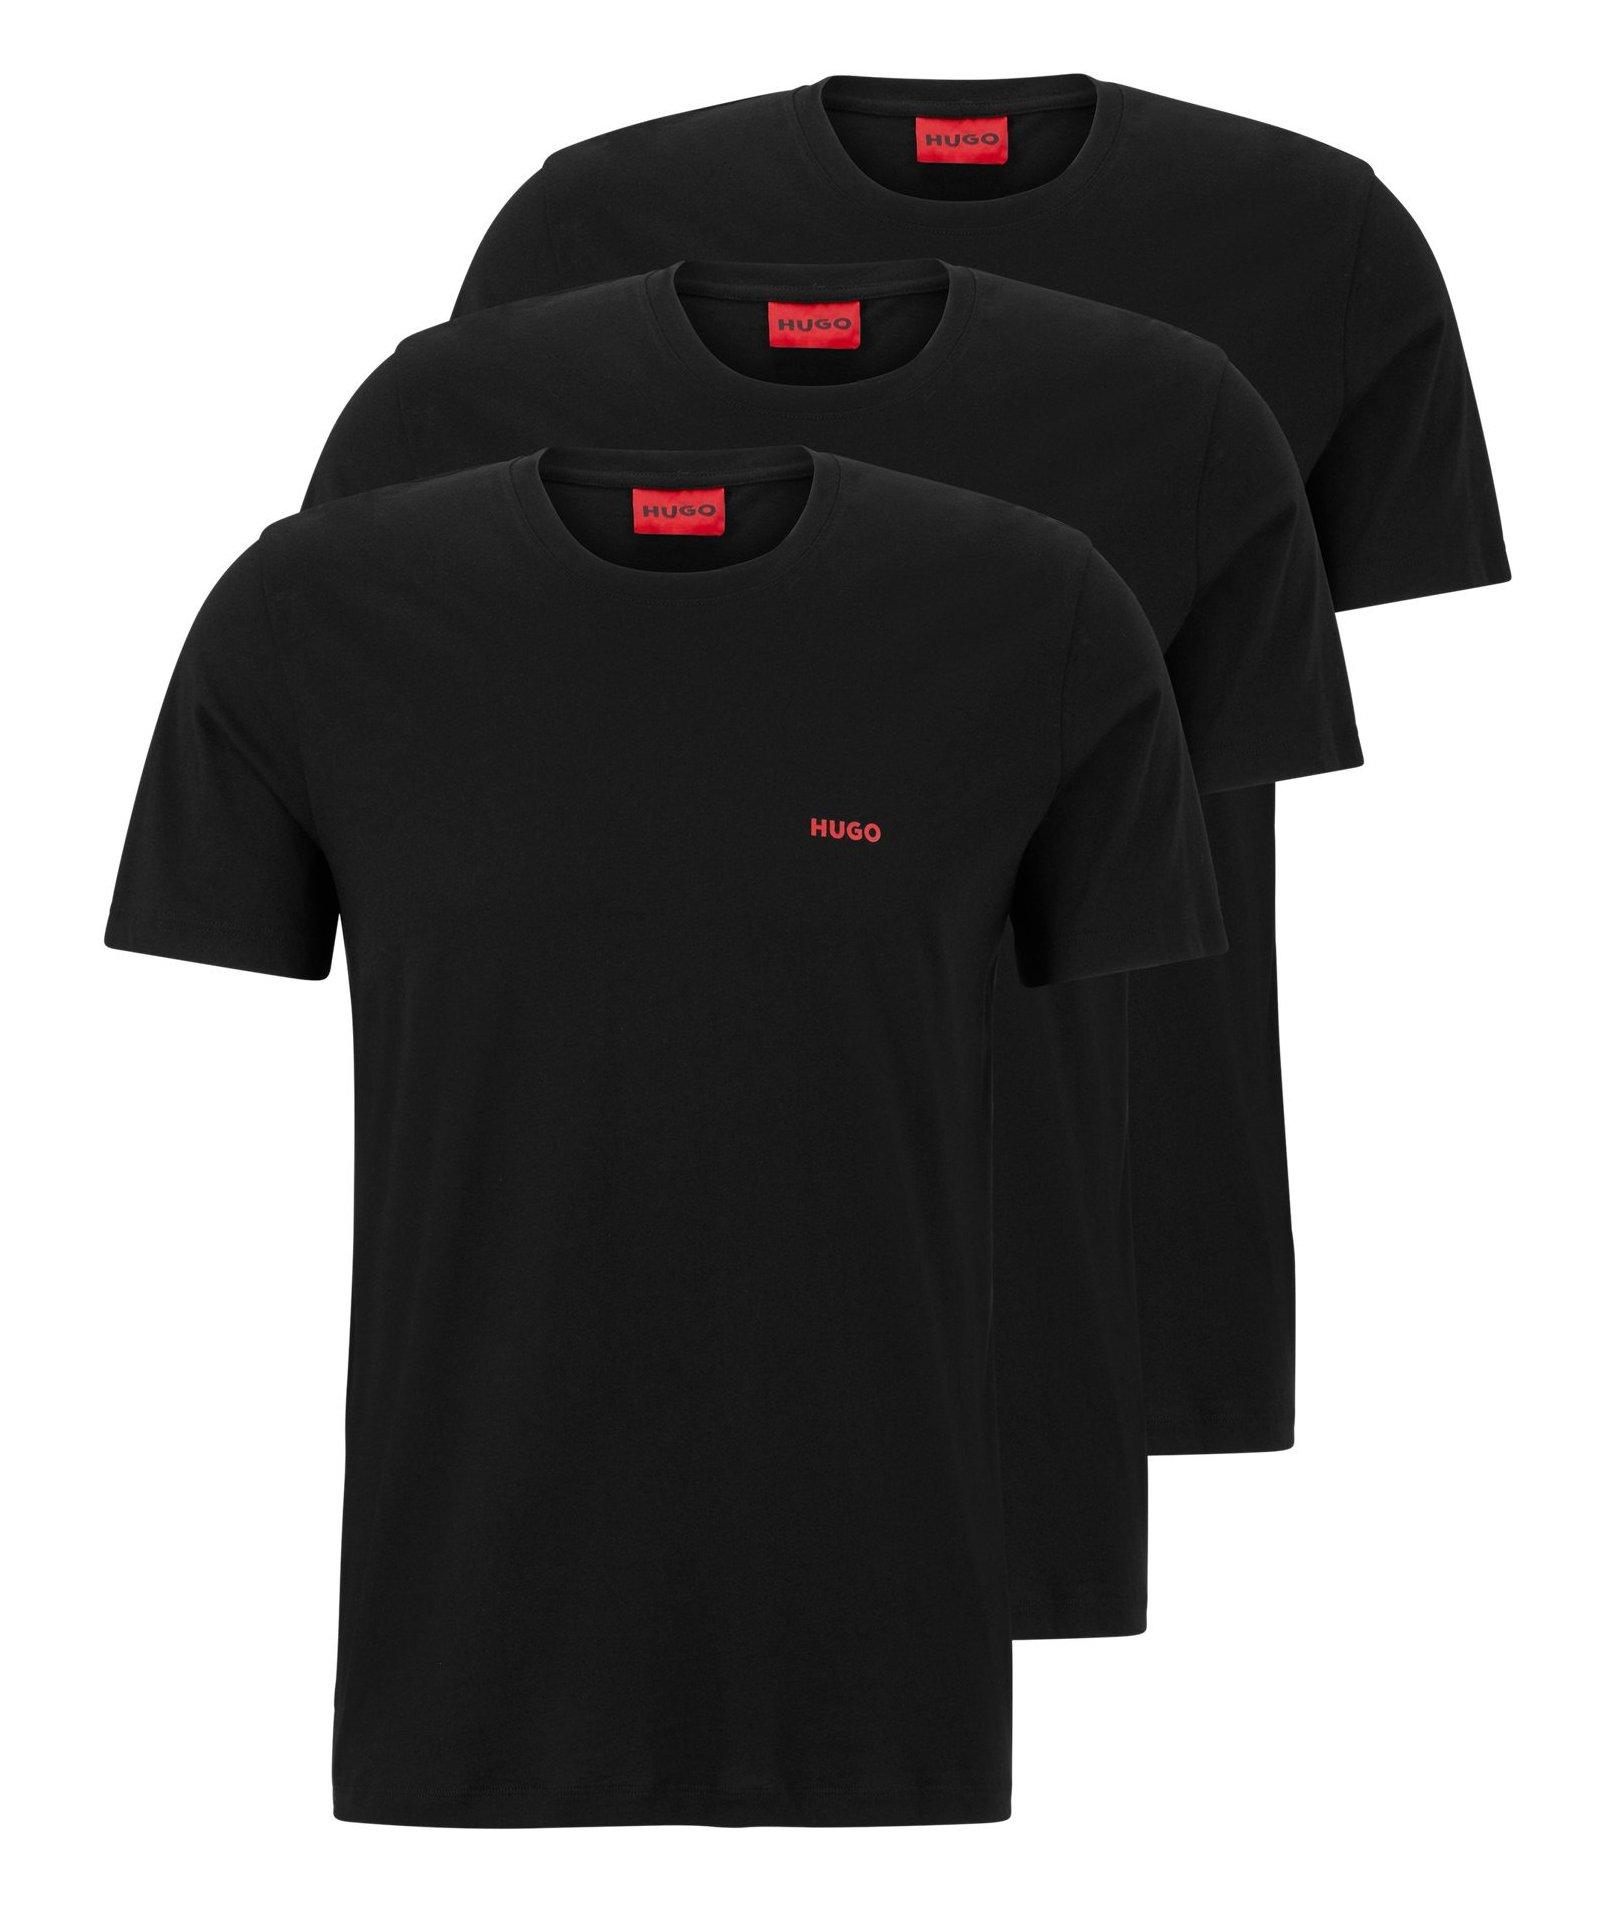 Ensemble de trois t-shirts en coton image 0